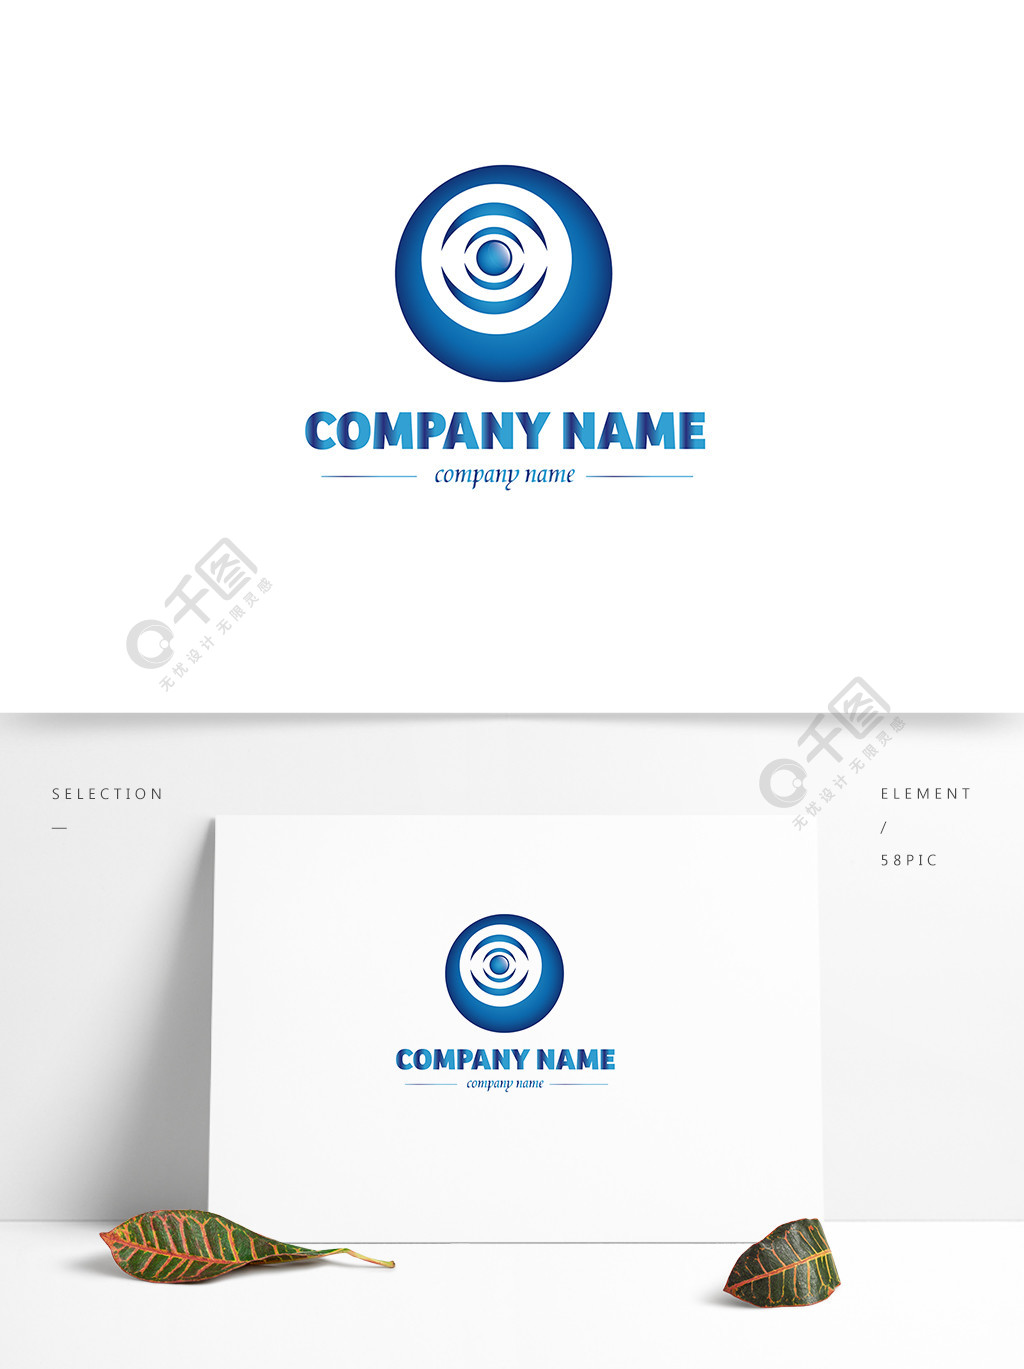 数码科技公司企业蓝色渐变商标logo标示